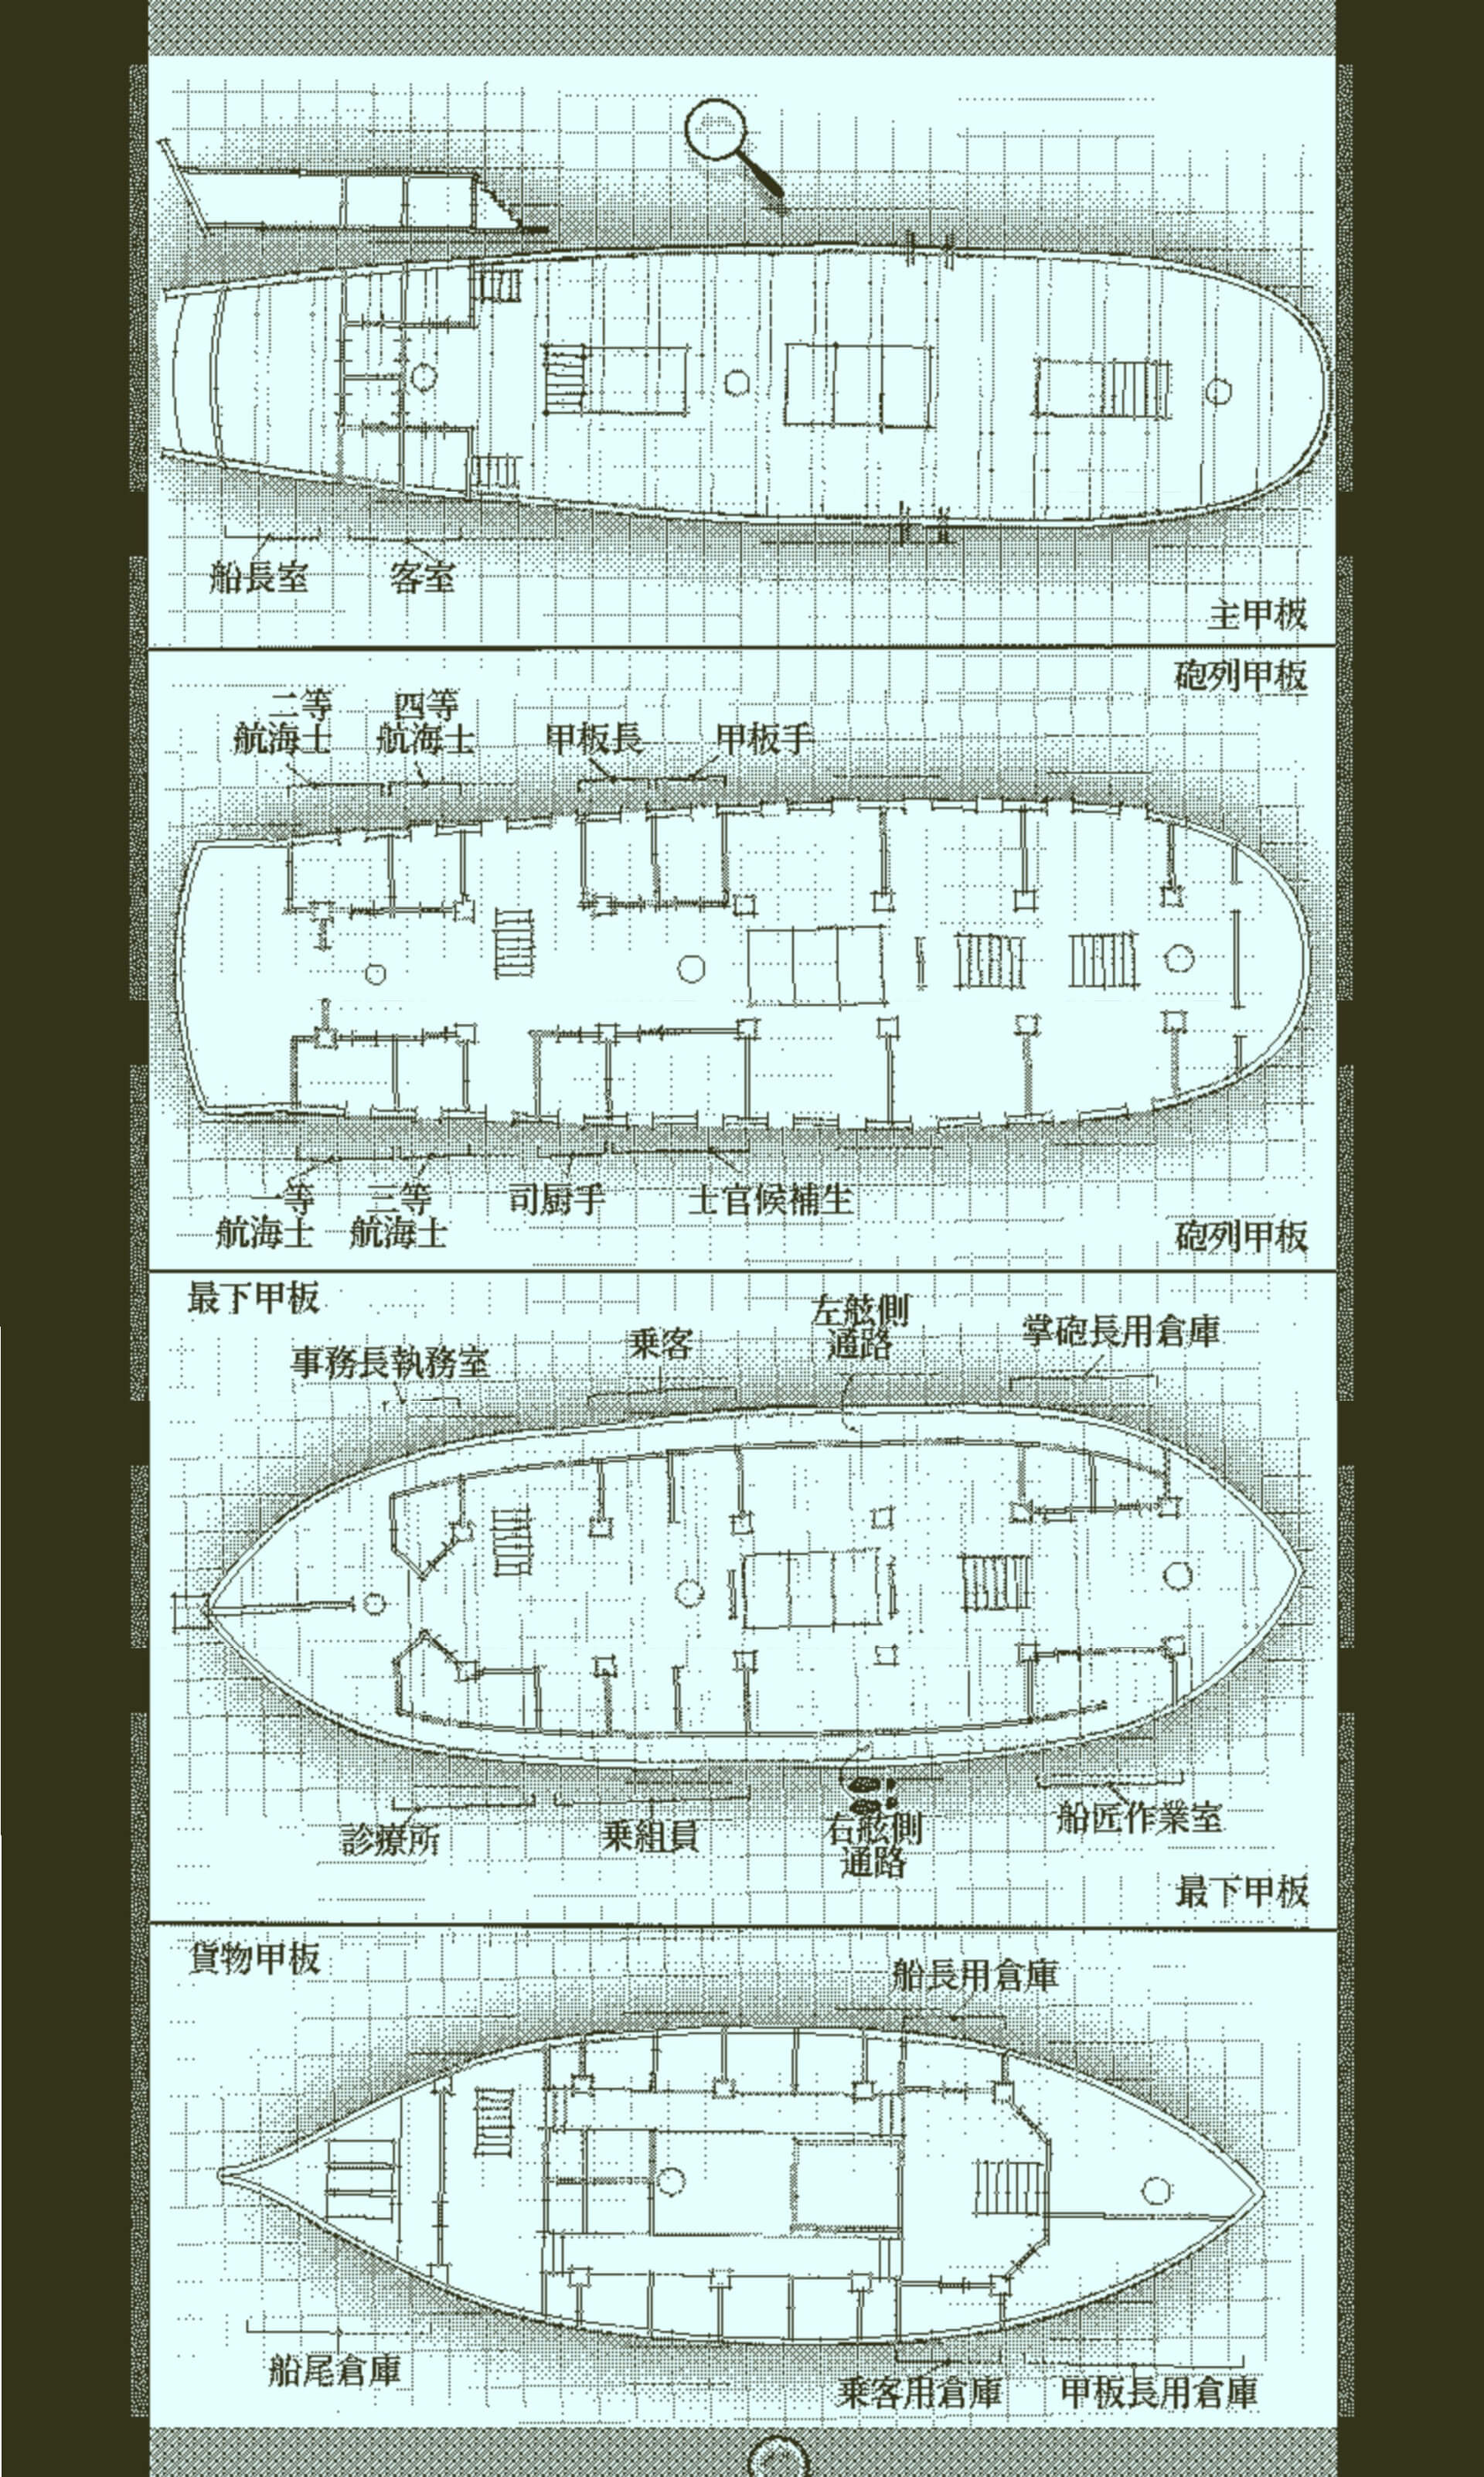 オブラ・ディン号船内図